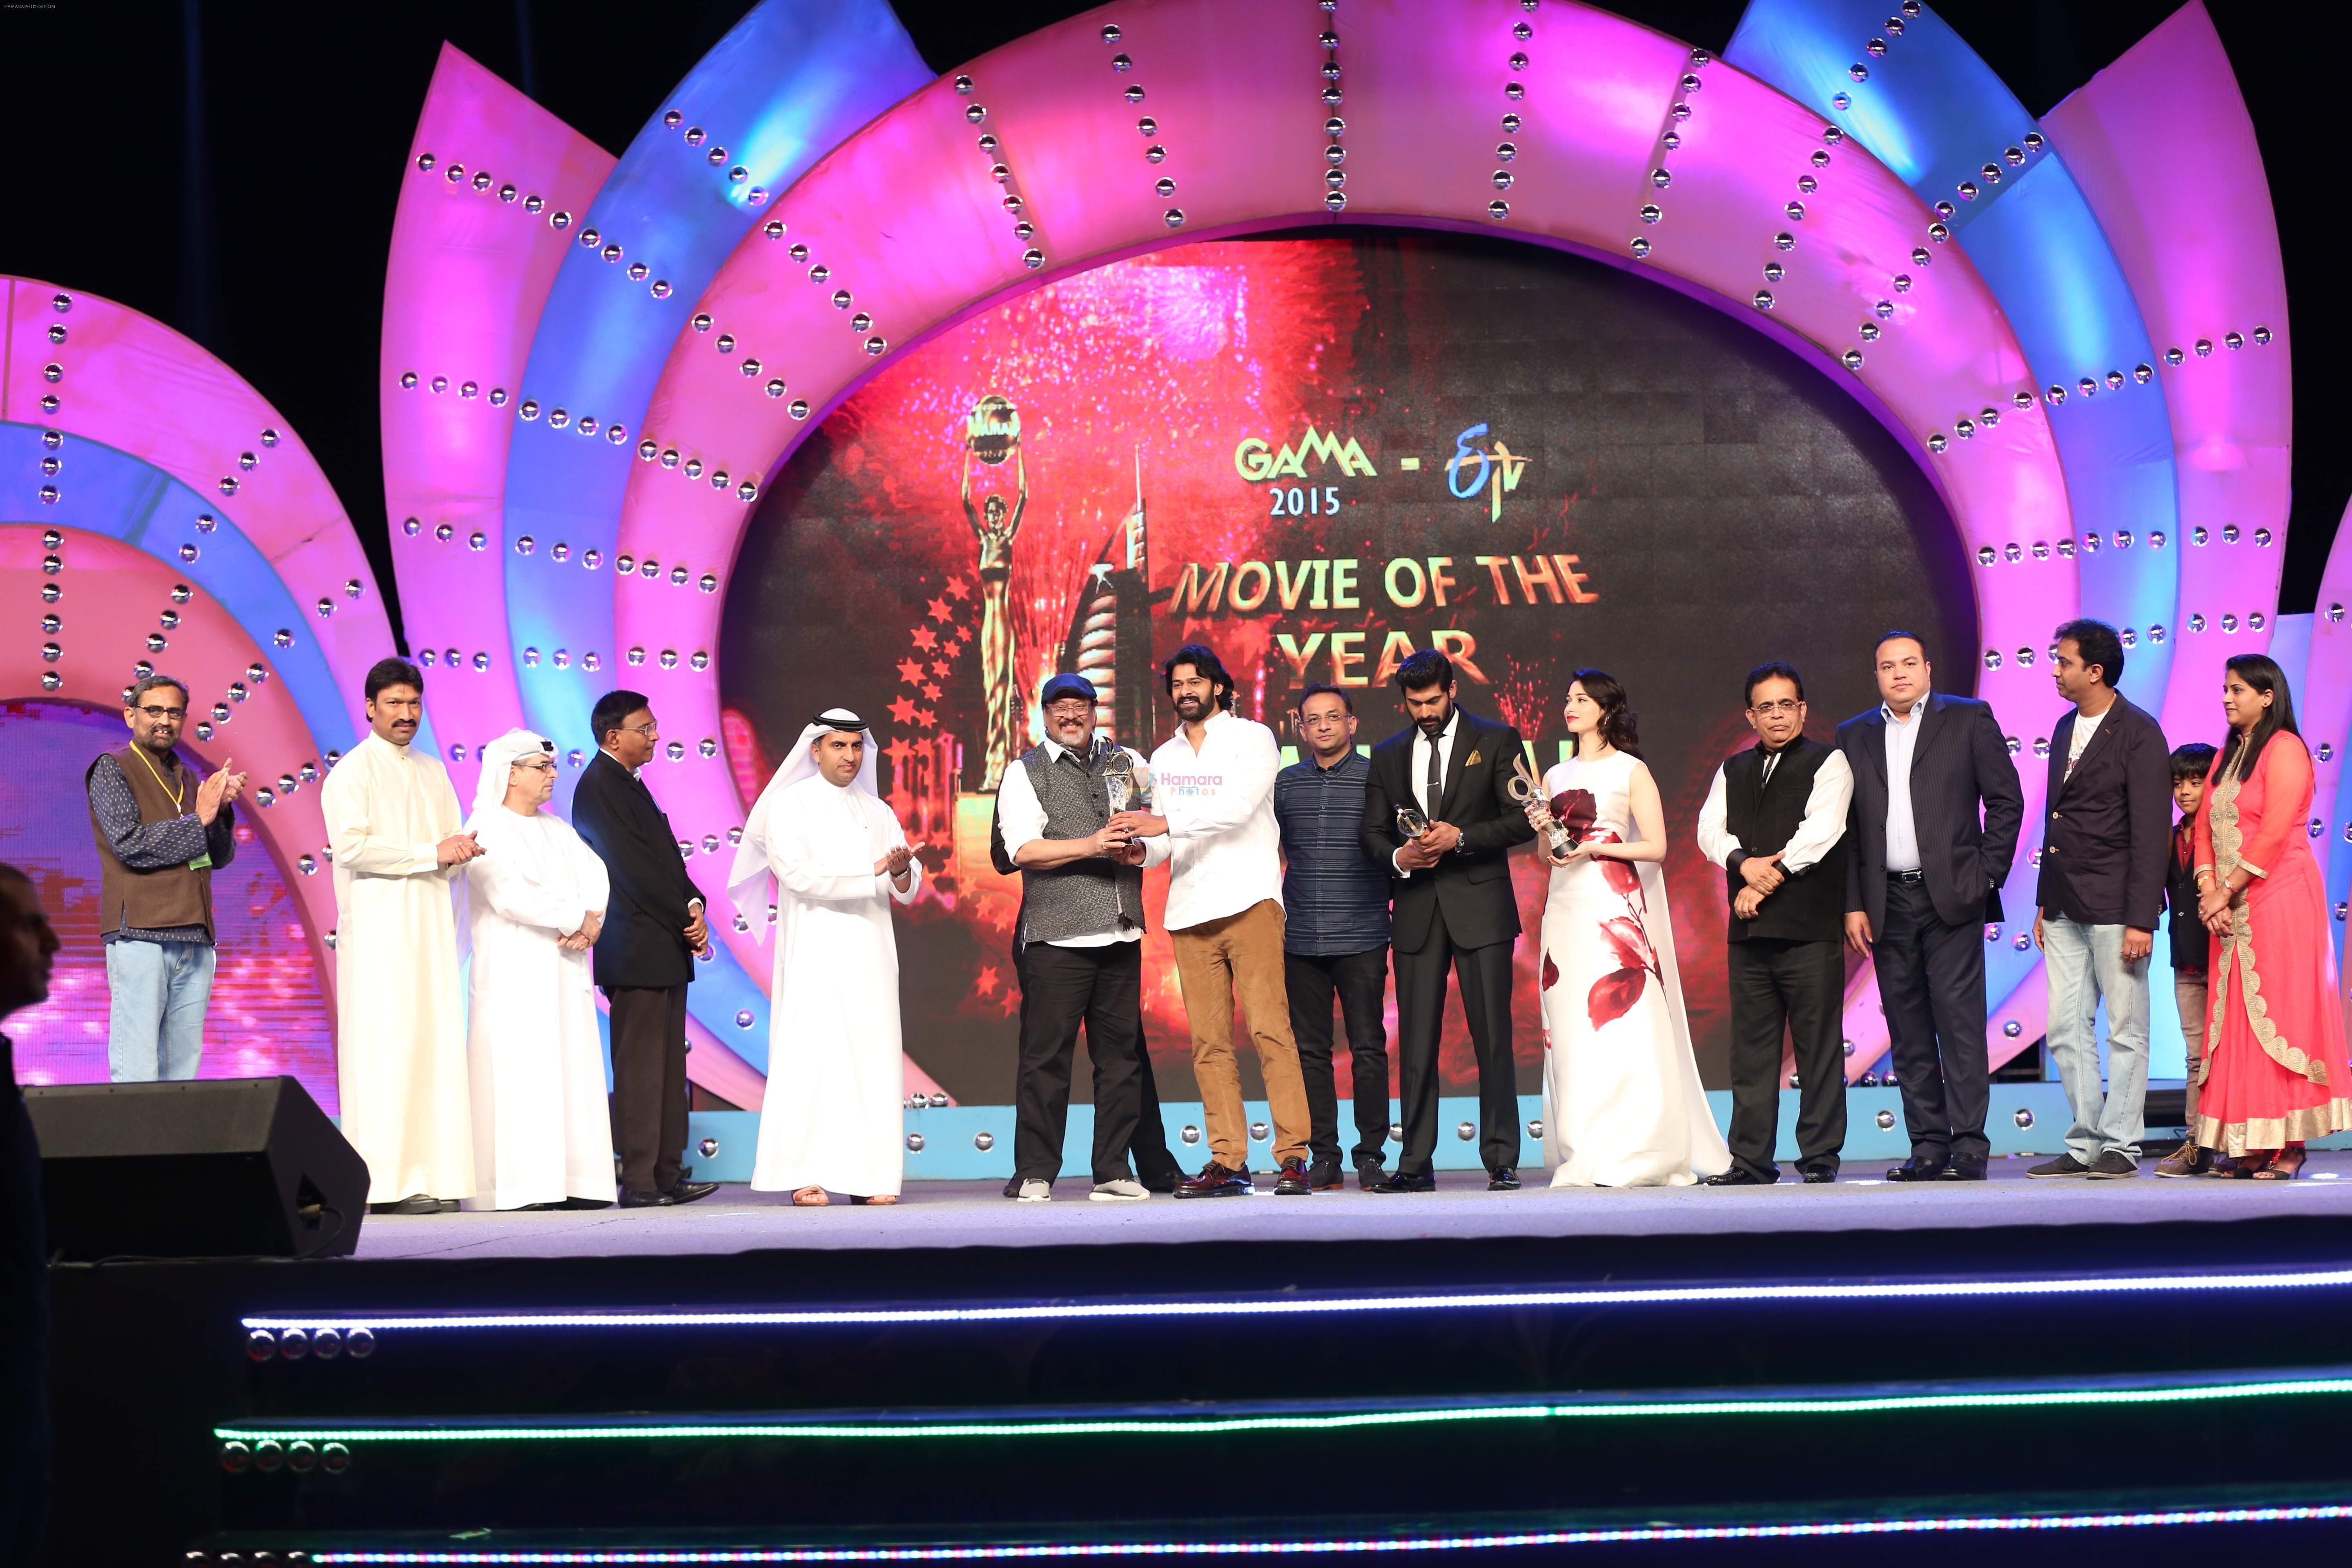 Tamannaah Bhatia at GAMA Awards 2015 on 12th Feb 2015